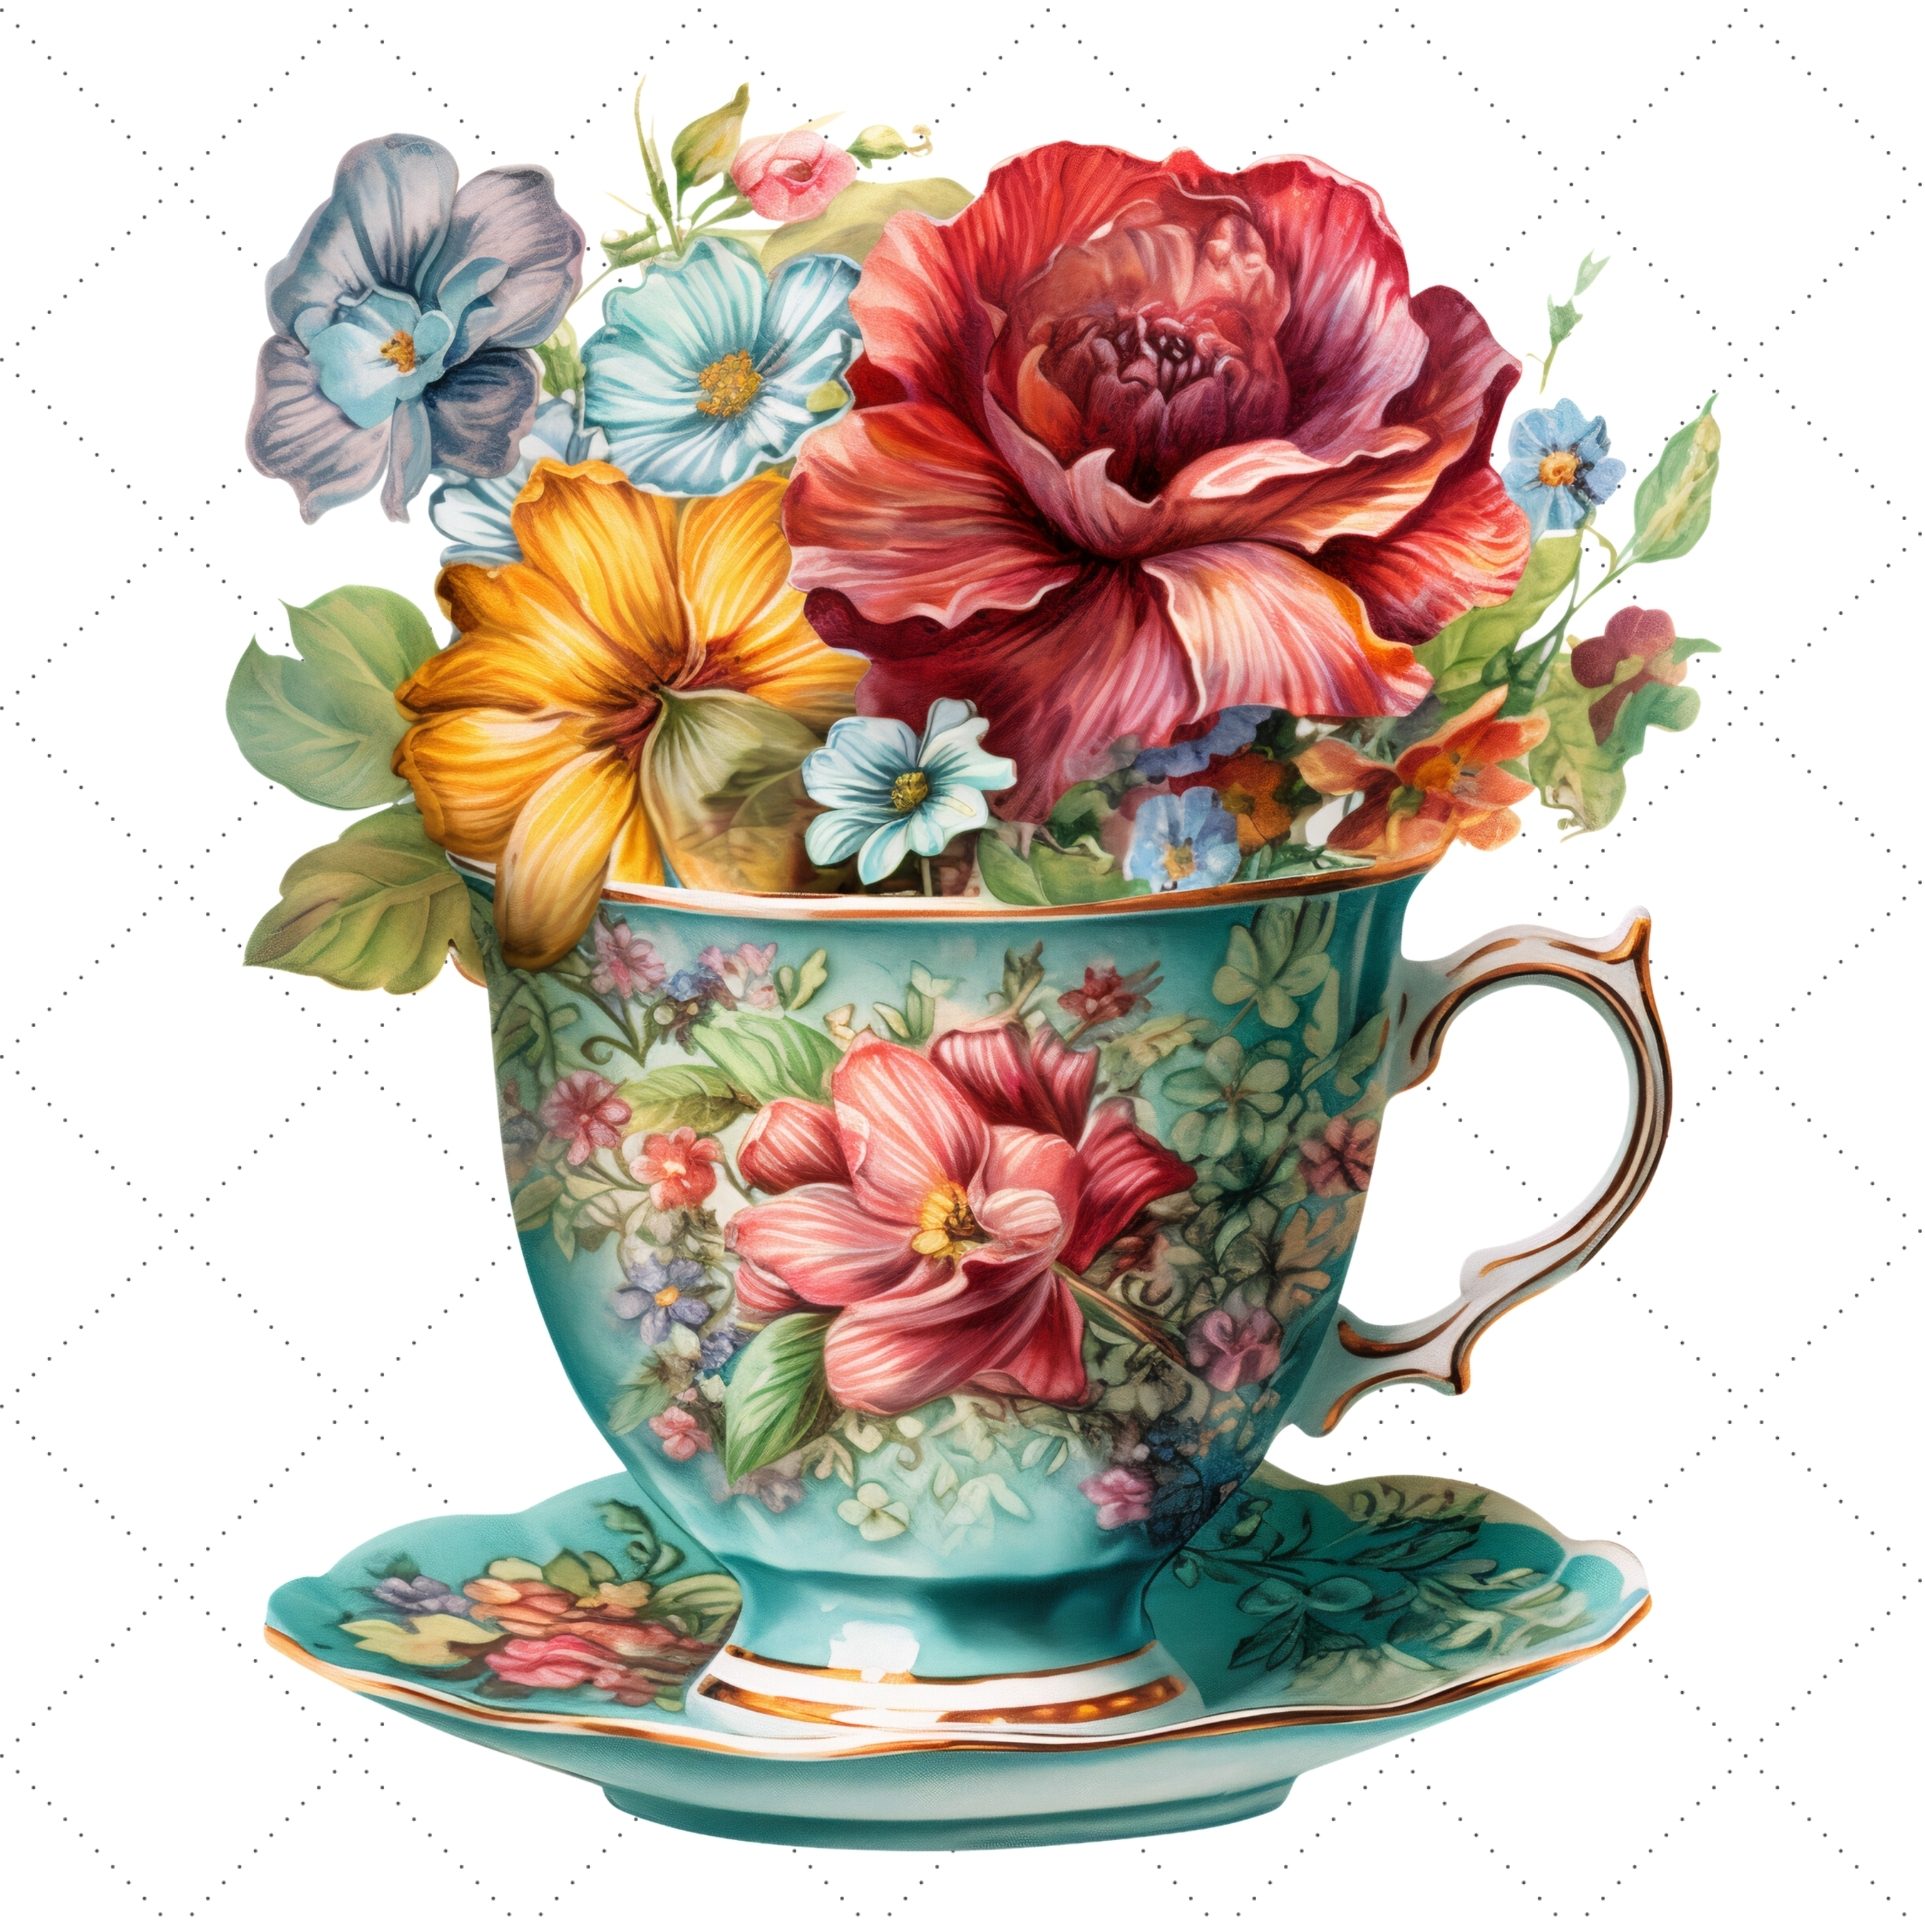 Vintage Blue Flowers Tea Cup and Pot Clipart Bundle